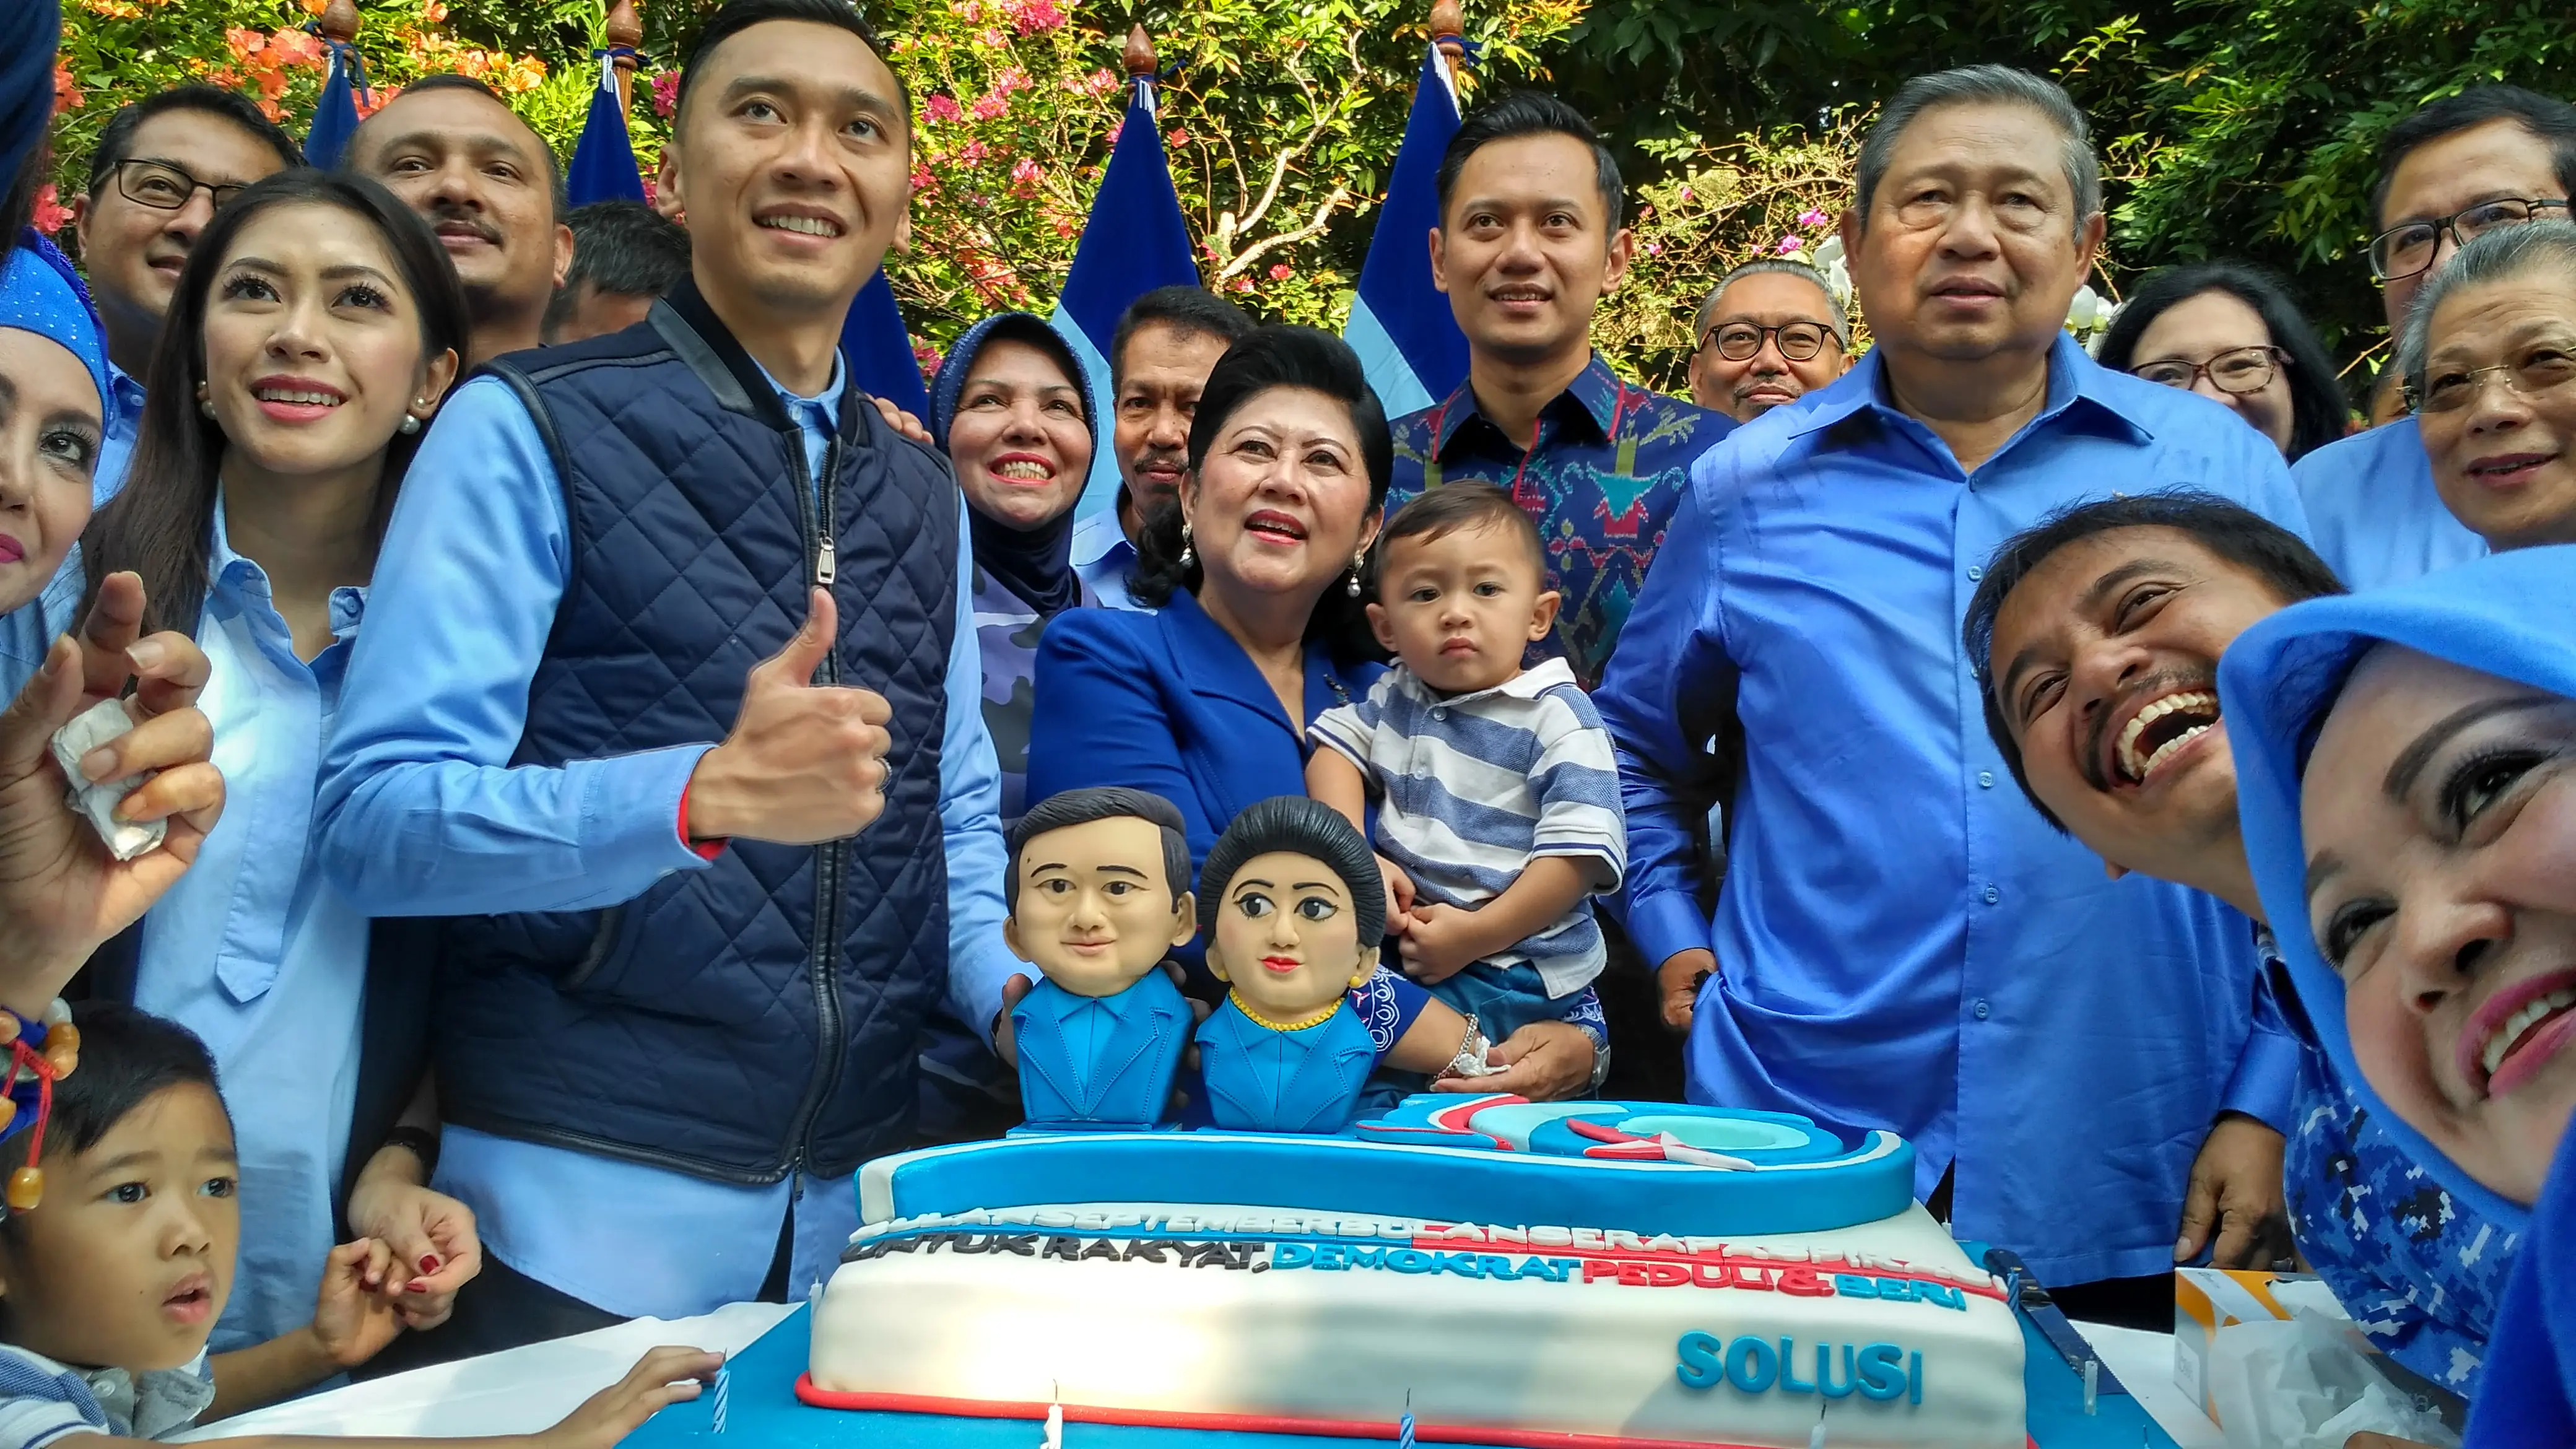  Usai memberikan sambutan dan pemotongan tumpeng, SBY mendapatkan kejutan kue ulang tahun berlambang angka 16 dengan warna seperti bendera Partai Demokrat. 